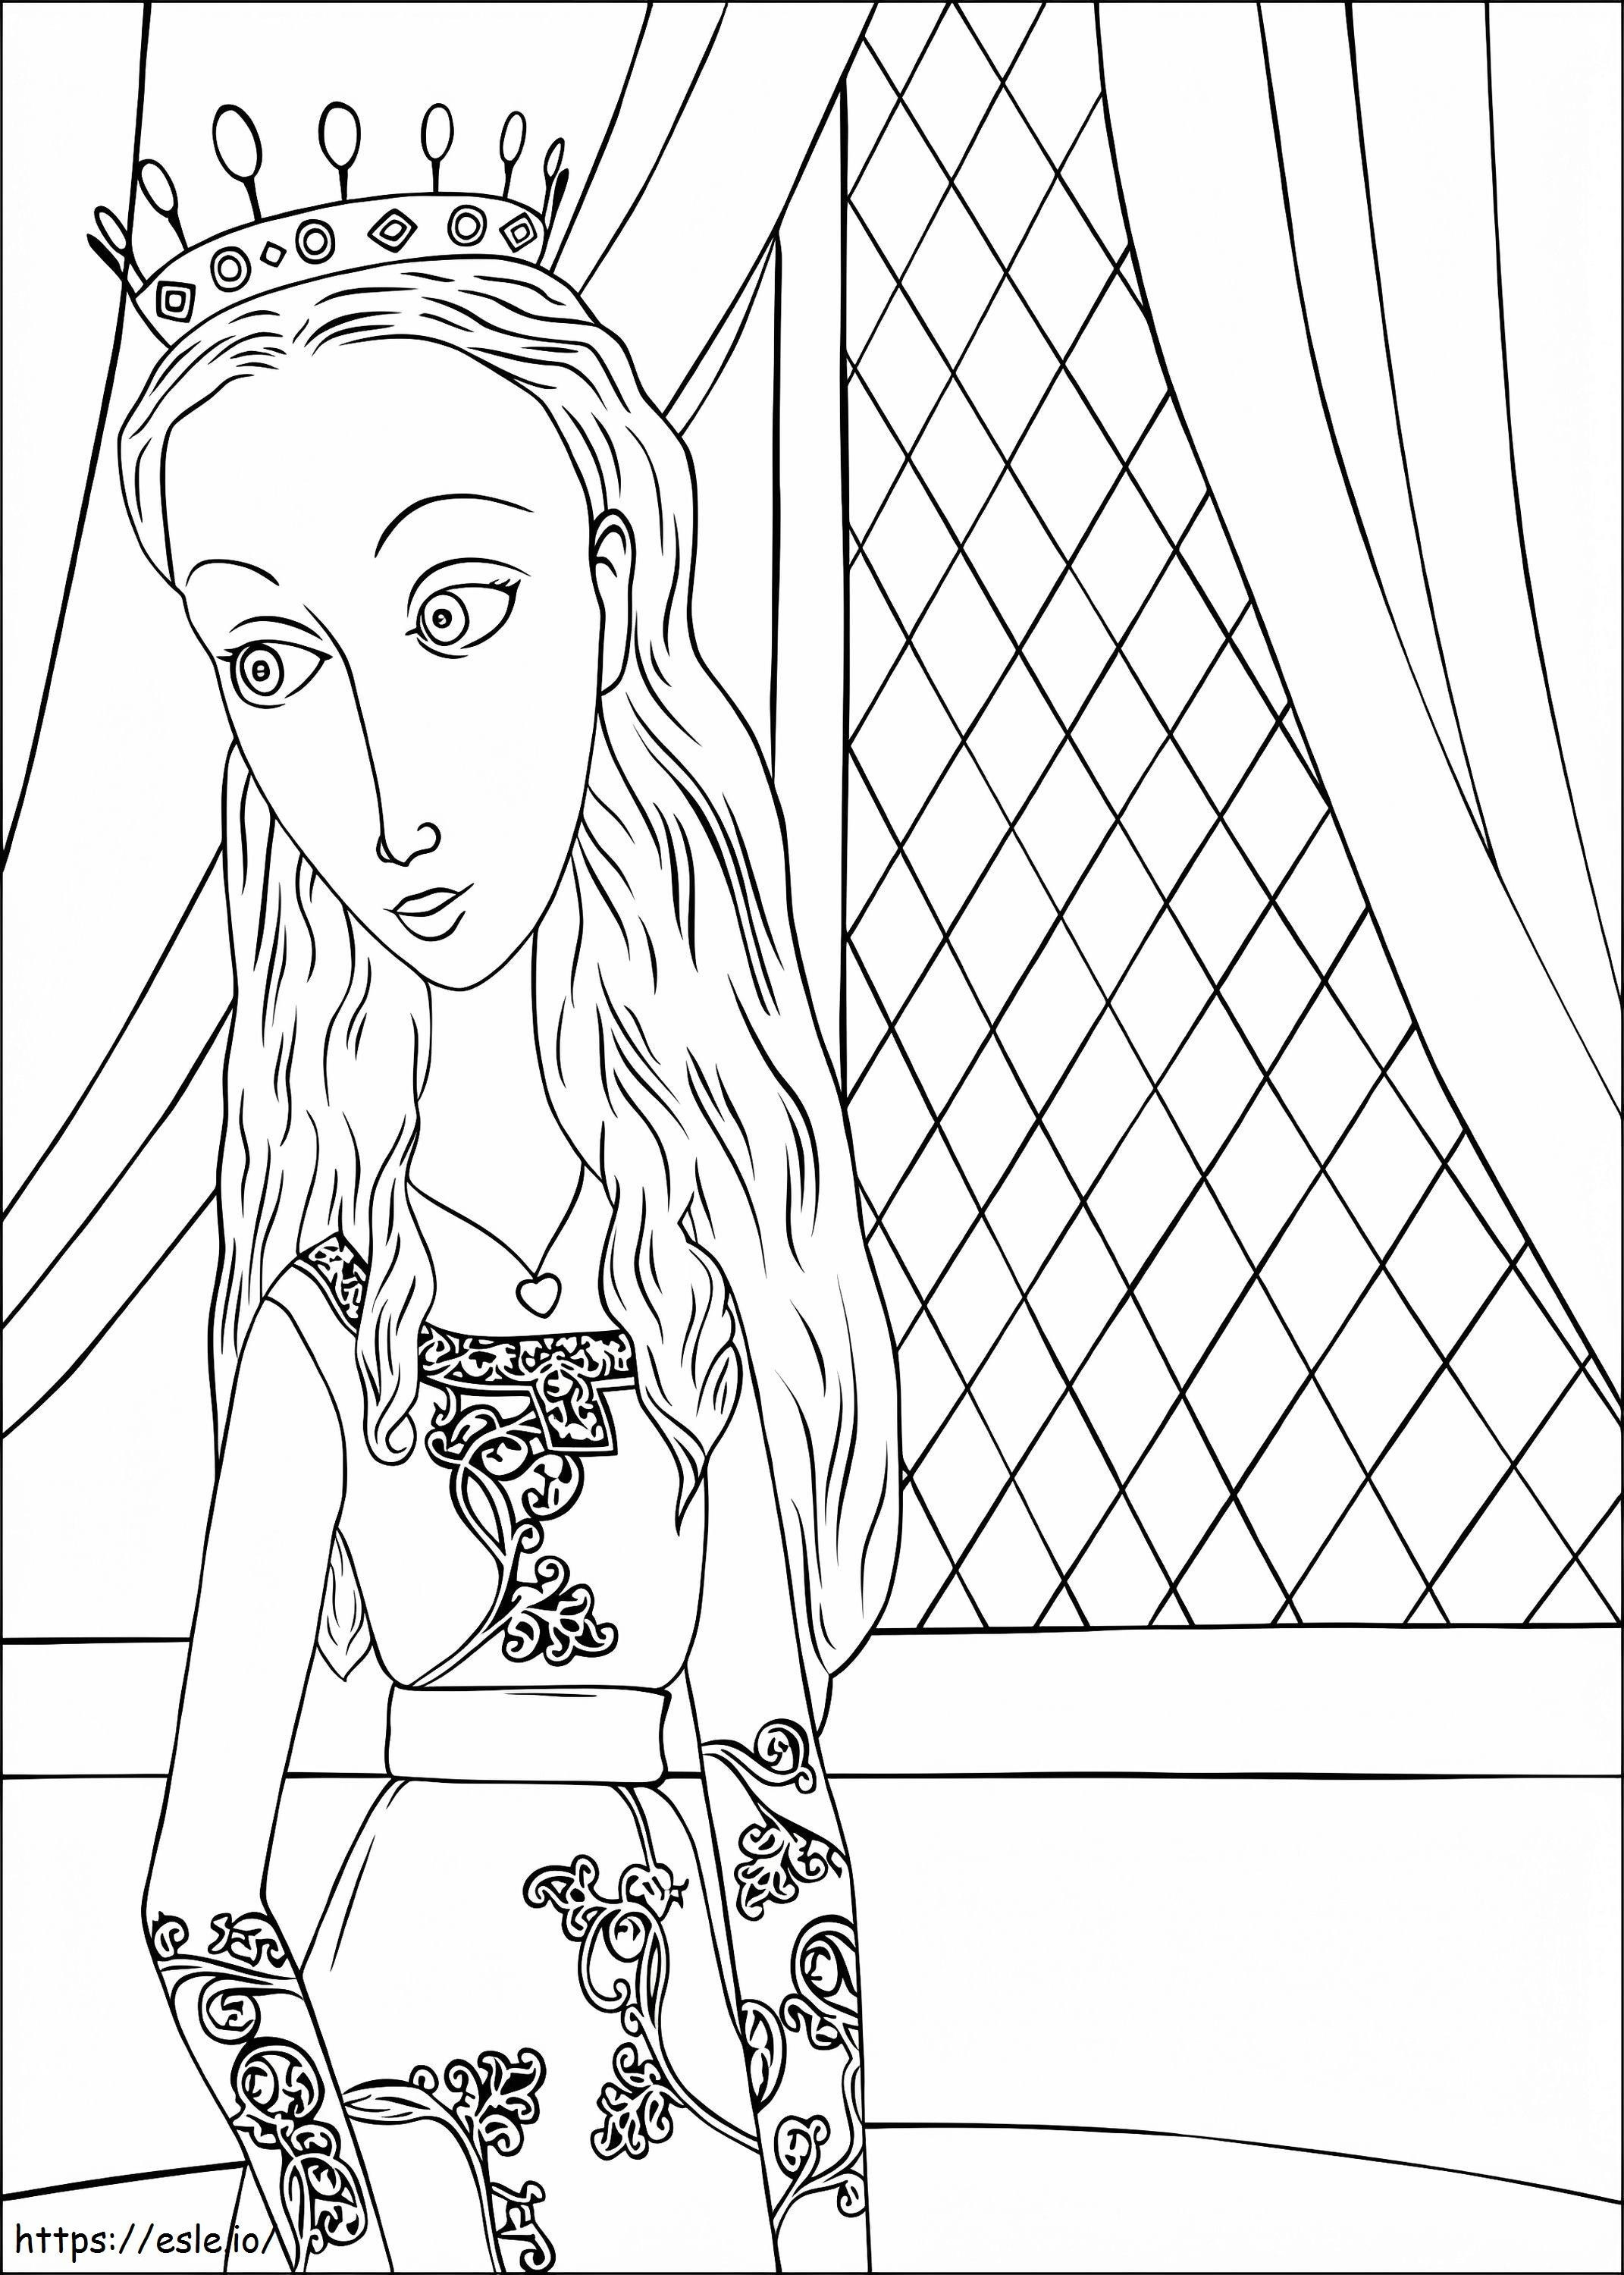 Princesa Pea do conto de Despereaux para colorir